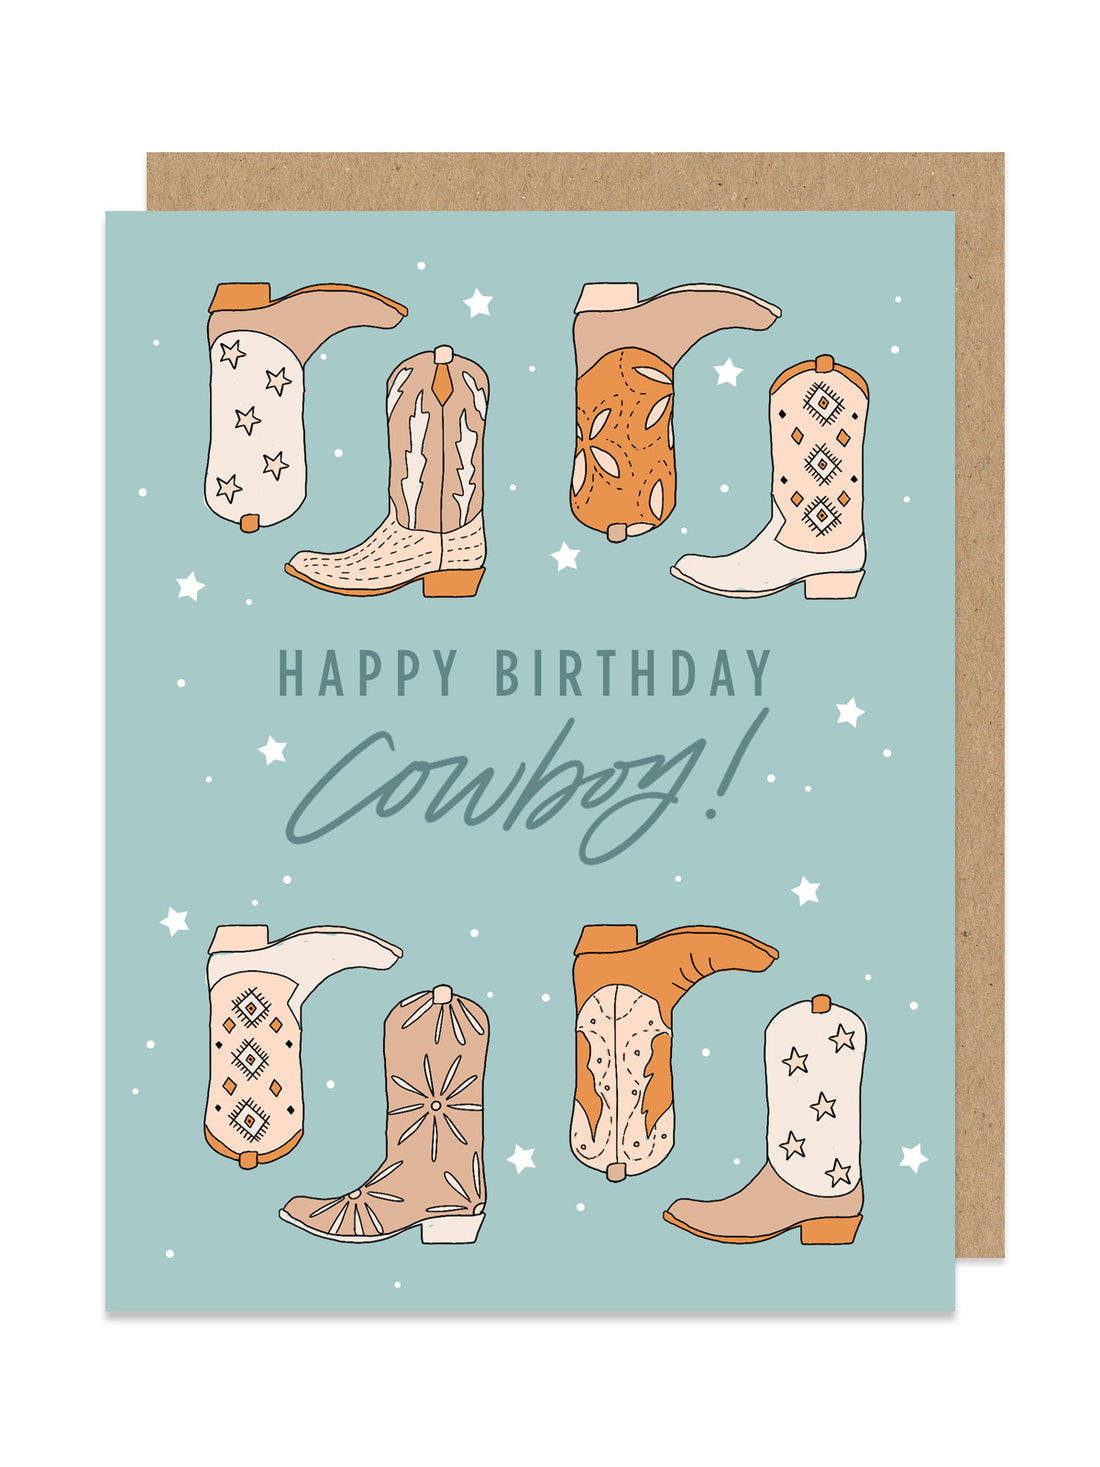 Happy Birthday Cowboy Card